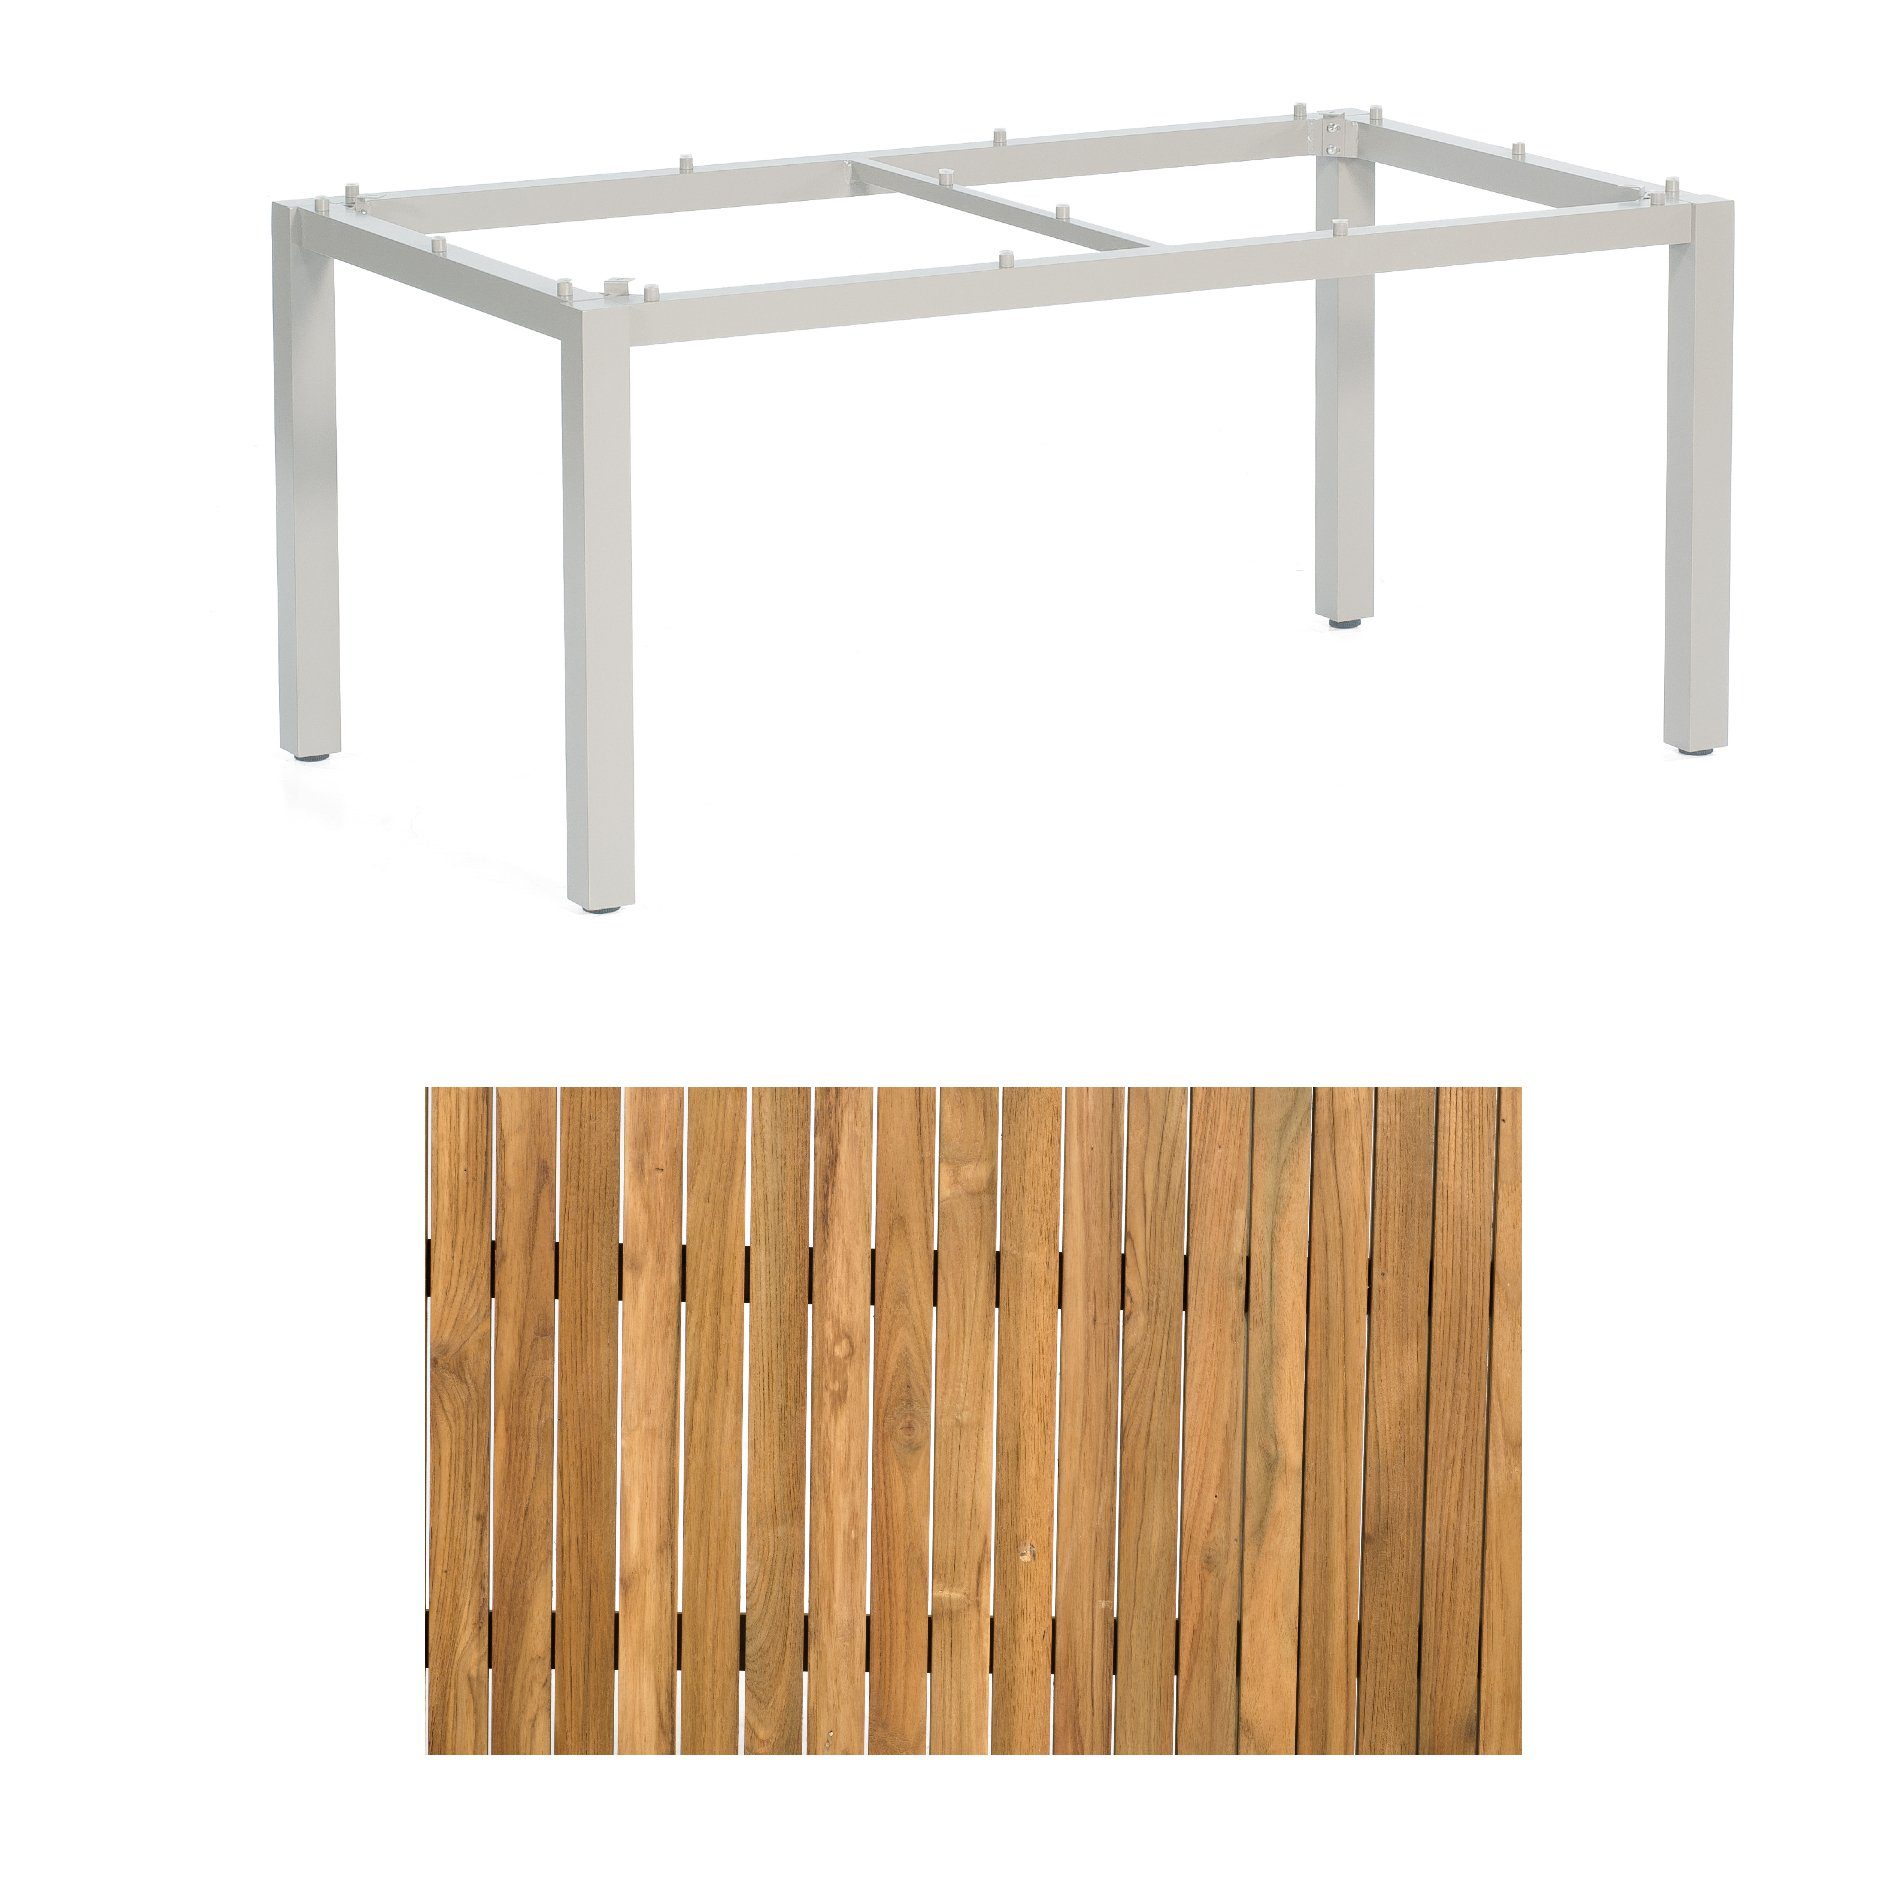 Sonnenpartner "Base" Gartentisch, Gestell Aluminium silber, Tischplatte Old Teak, Größe: 160x90 cm